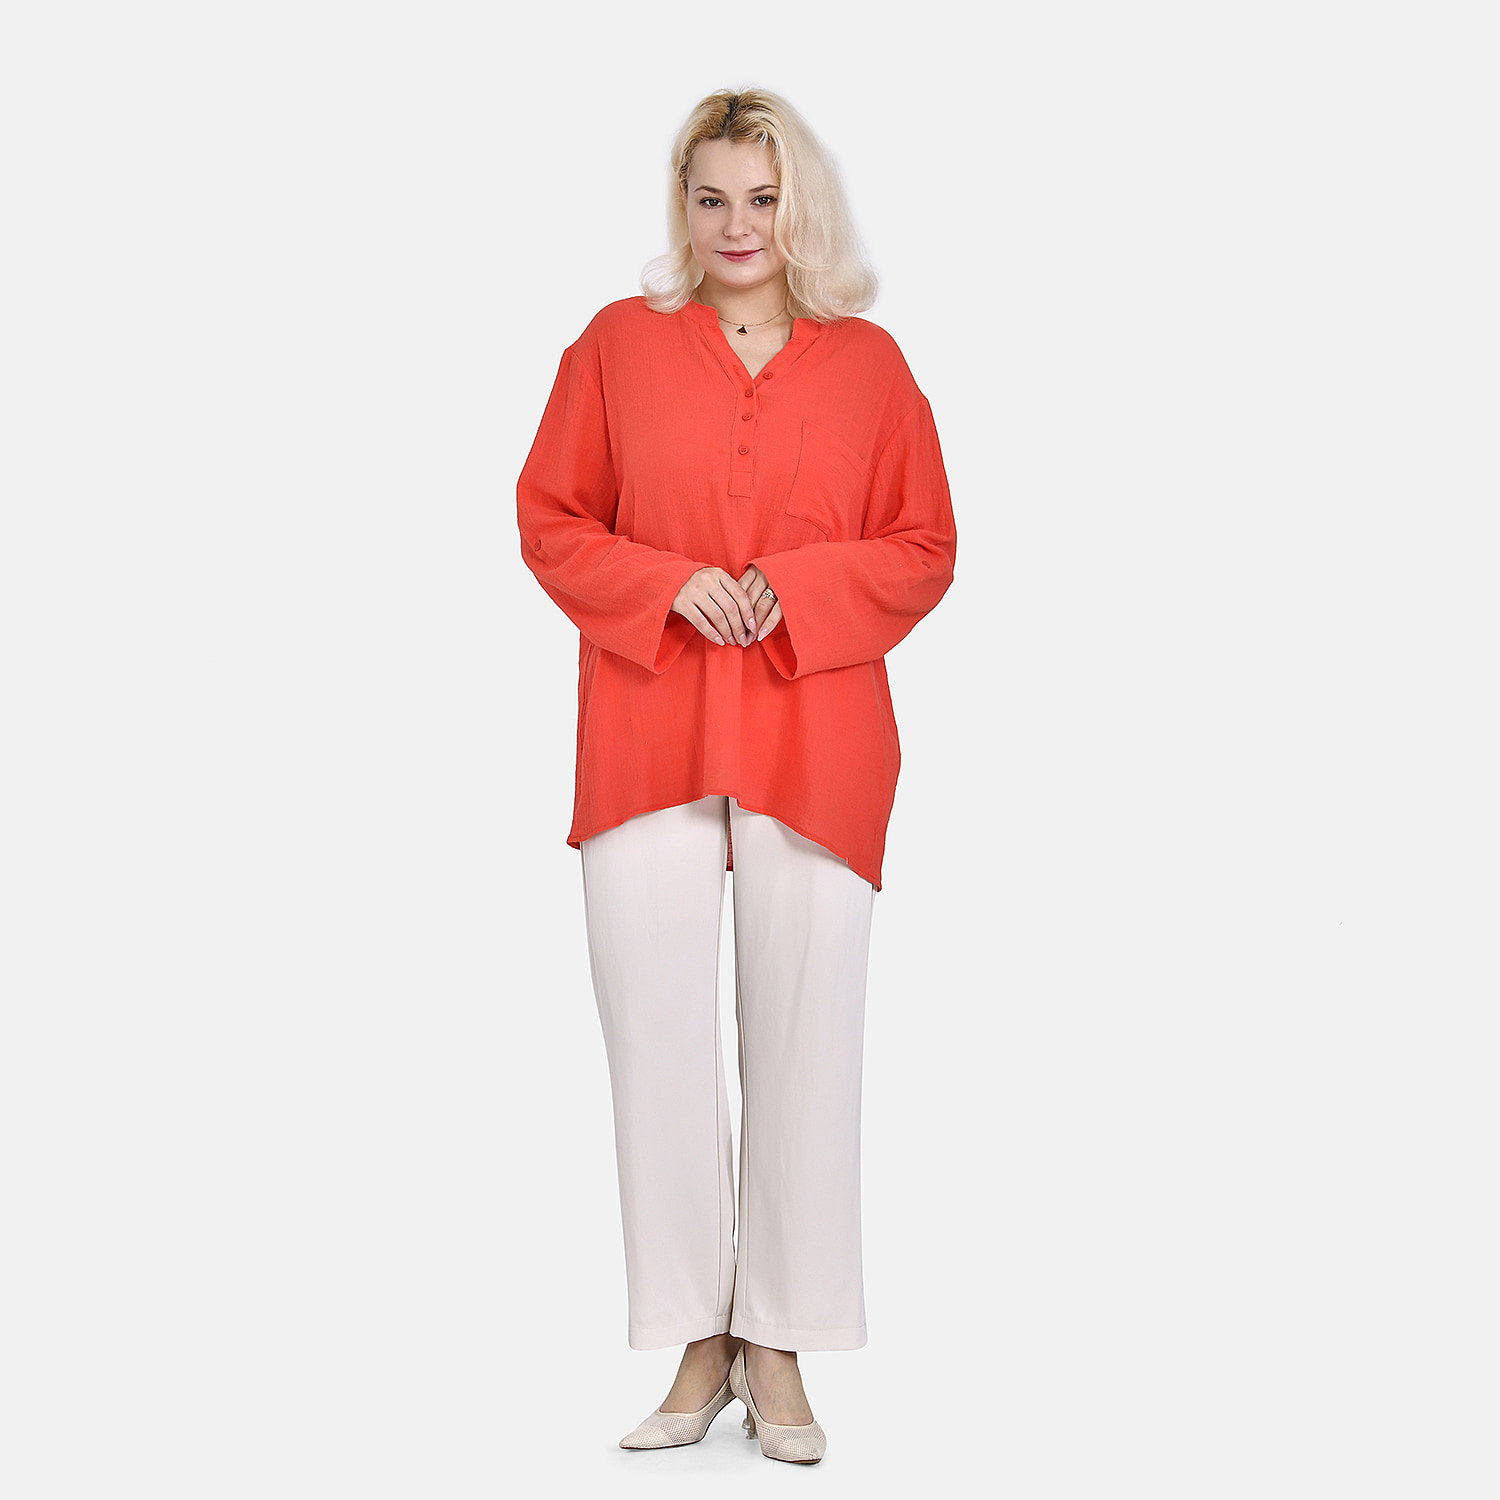 La Marey Cotton Blend 3-4 Sleeve Blouse (Size M) - Orange